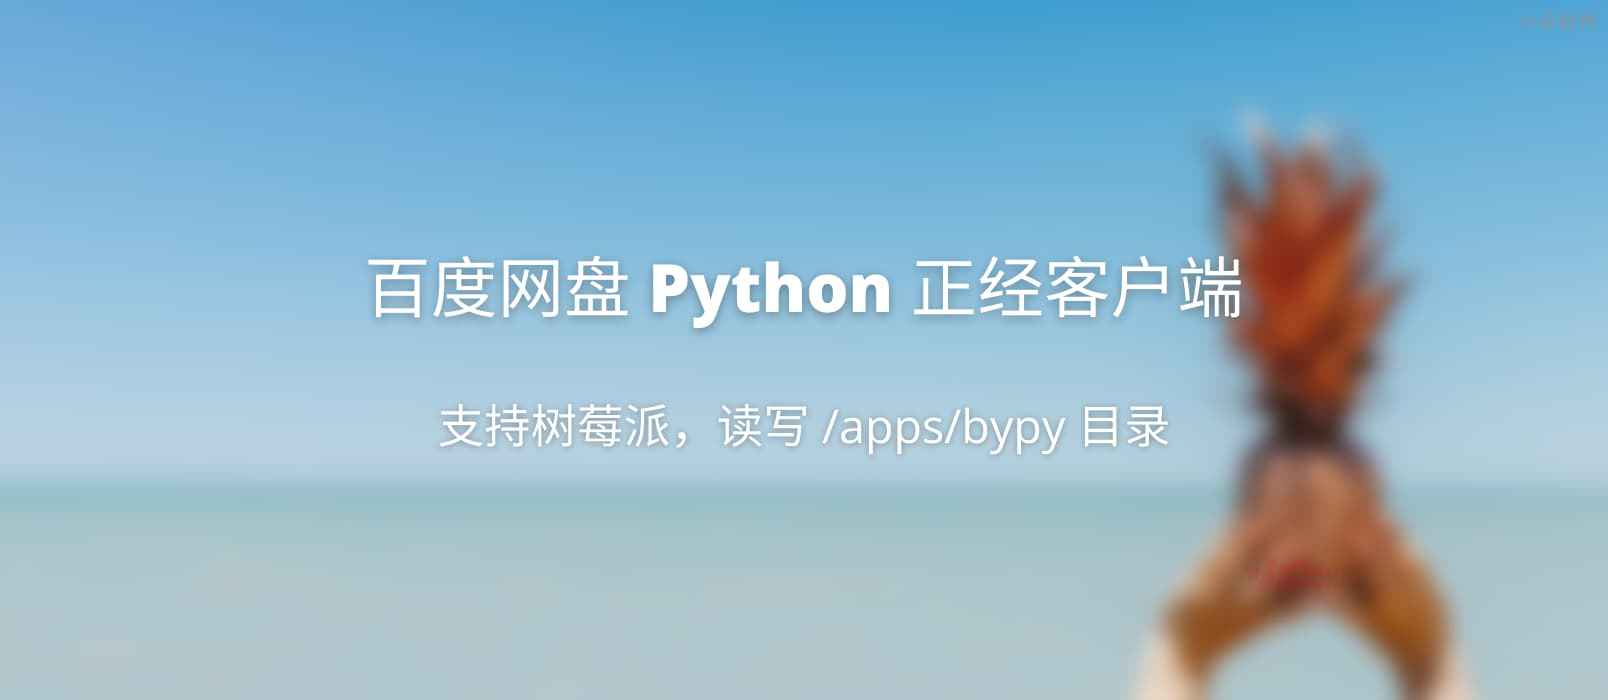 百度网盘 Python 客户端 - 正经客户端，可在树莓派上使用